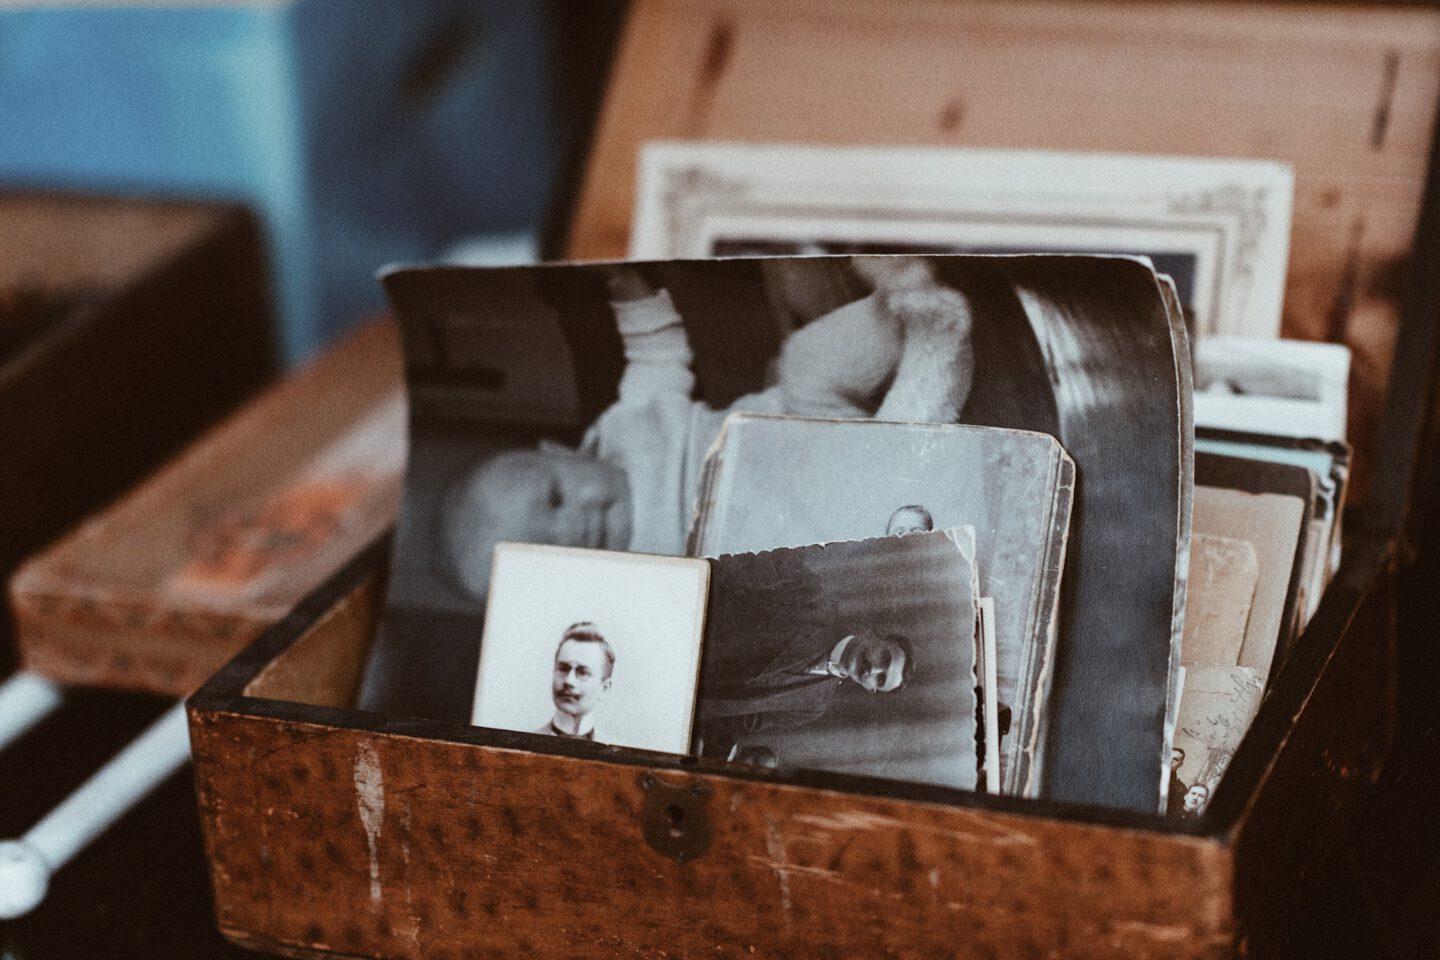 erinnerungsstücke wie Fotos in einer Erinnerungskiste aufbewahrt